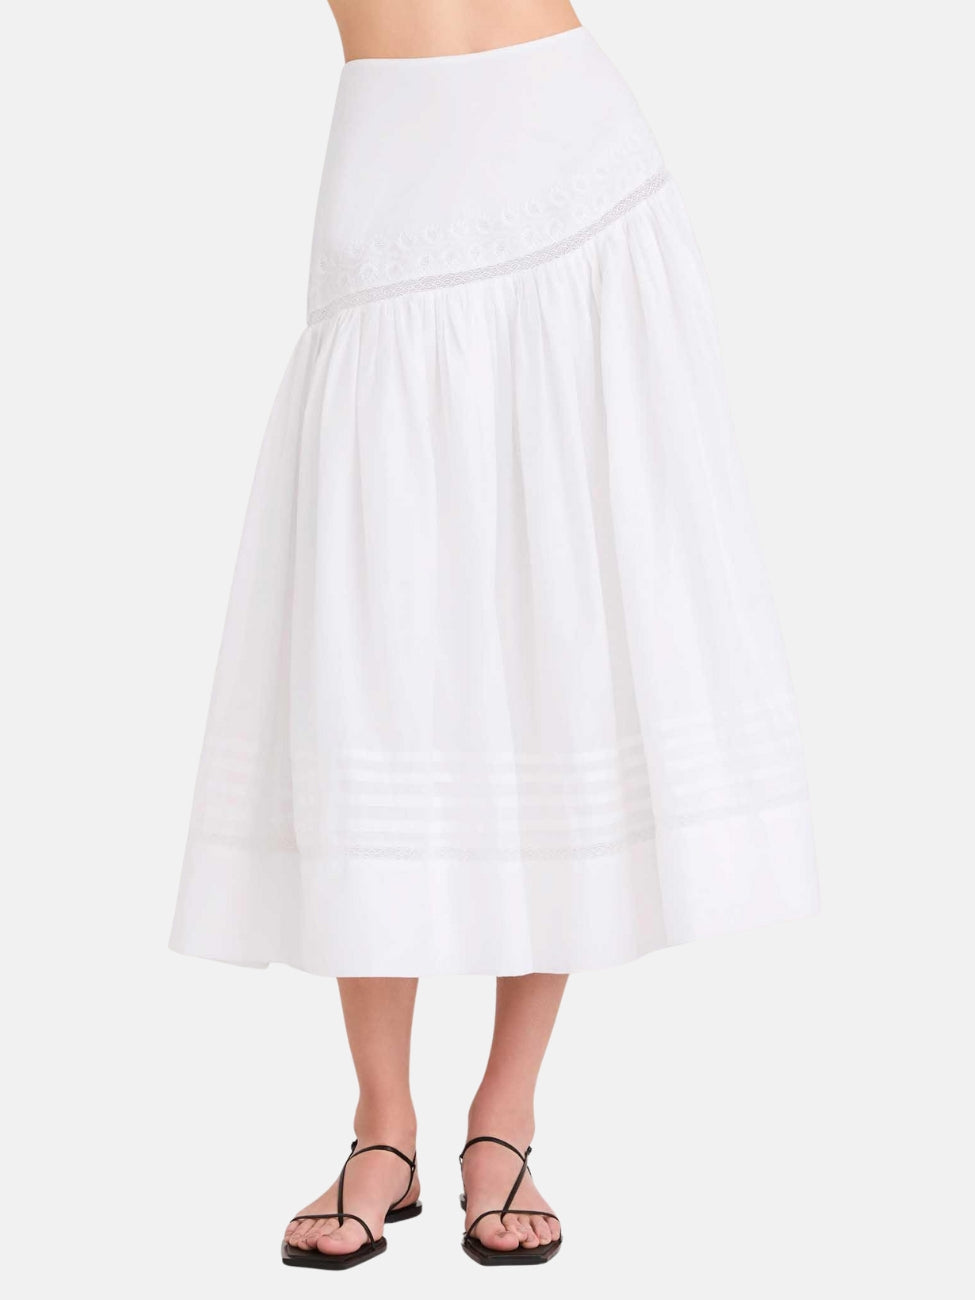 Aubrac Skirt in White